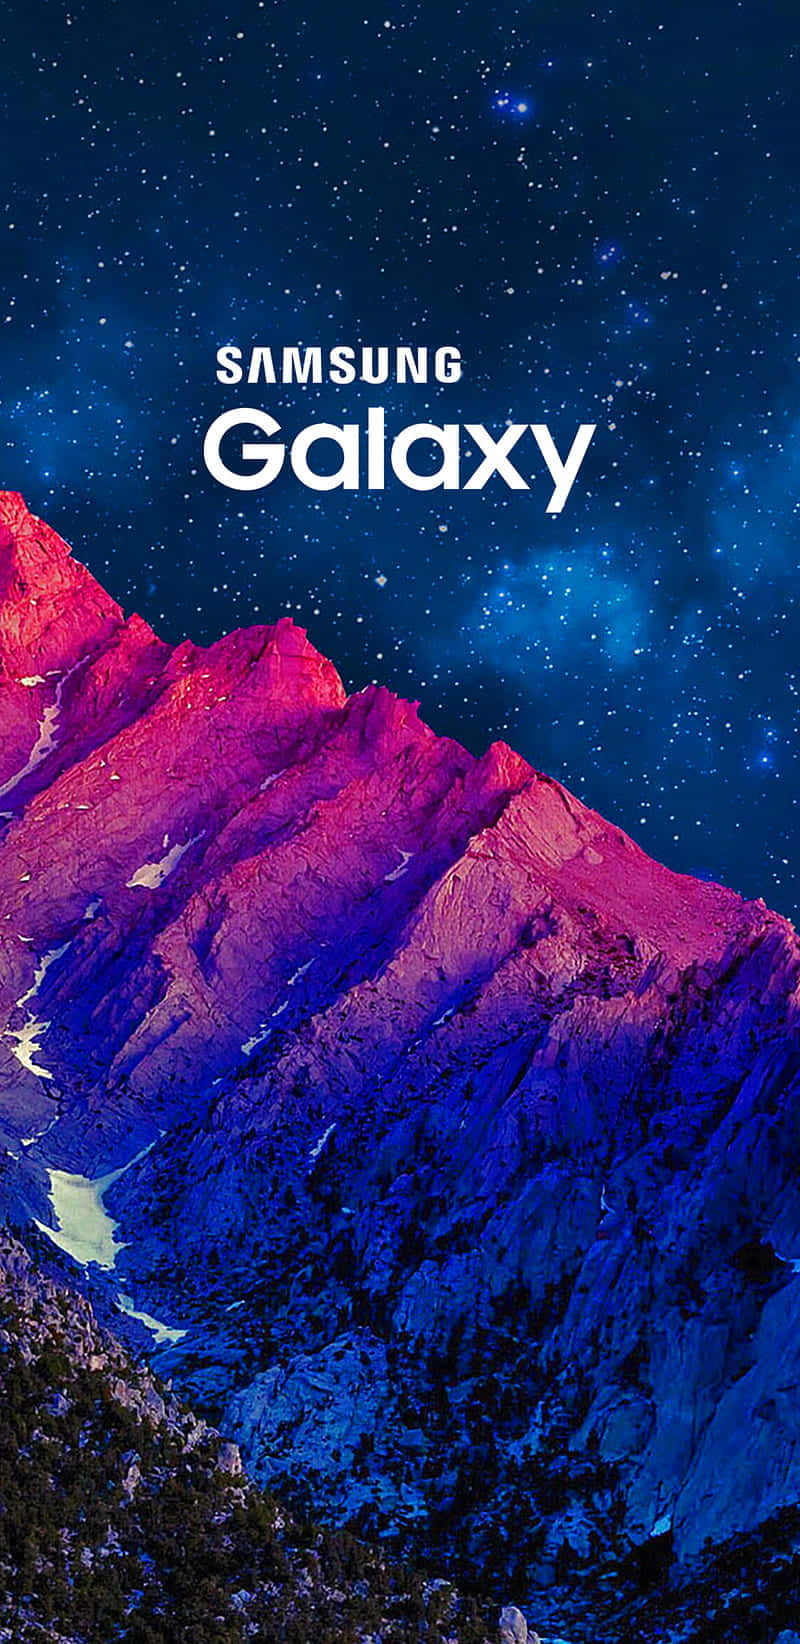 Elpoder Y La Calidad De Samsung